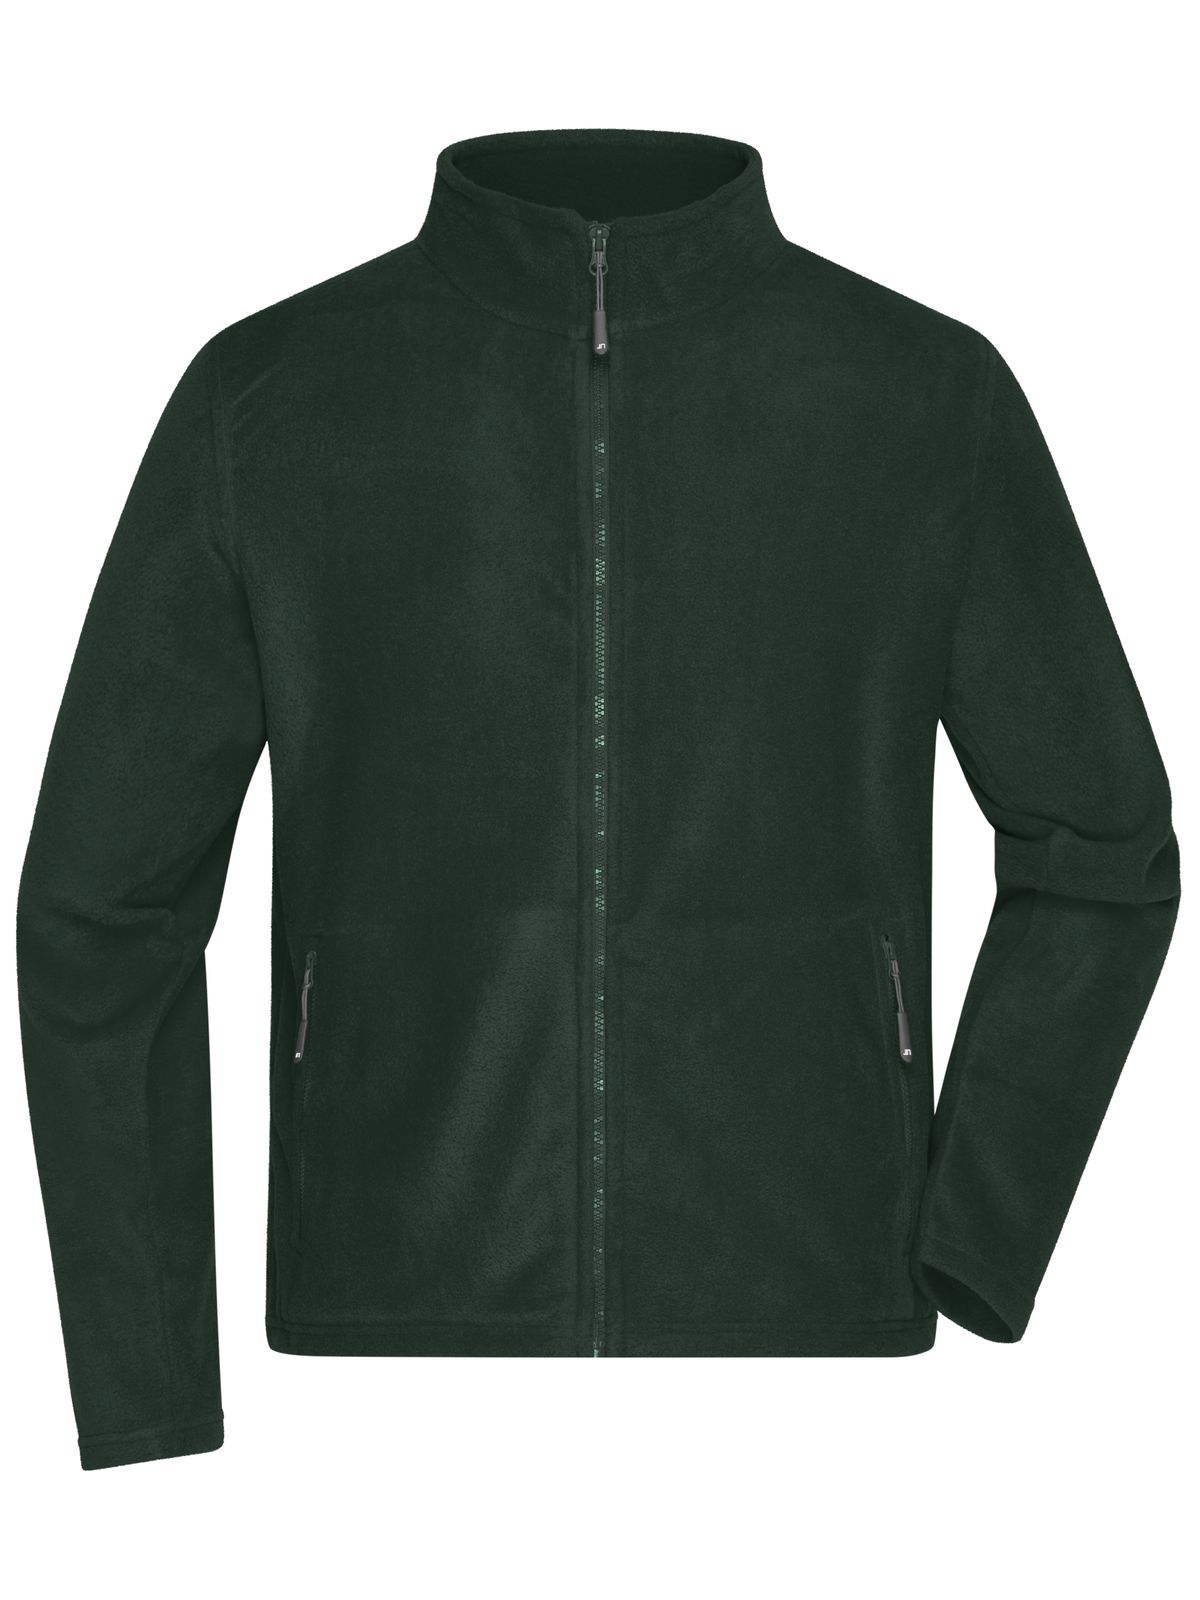 mens-fleece-jacket-dark-green.webp